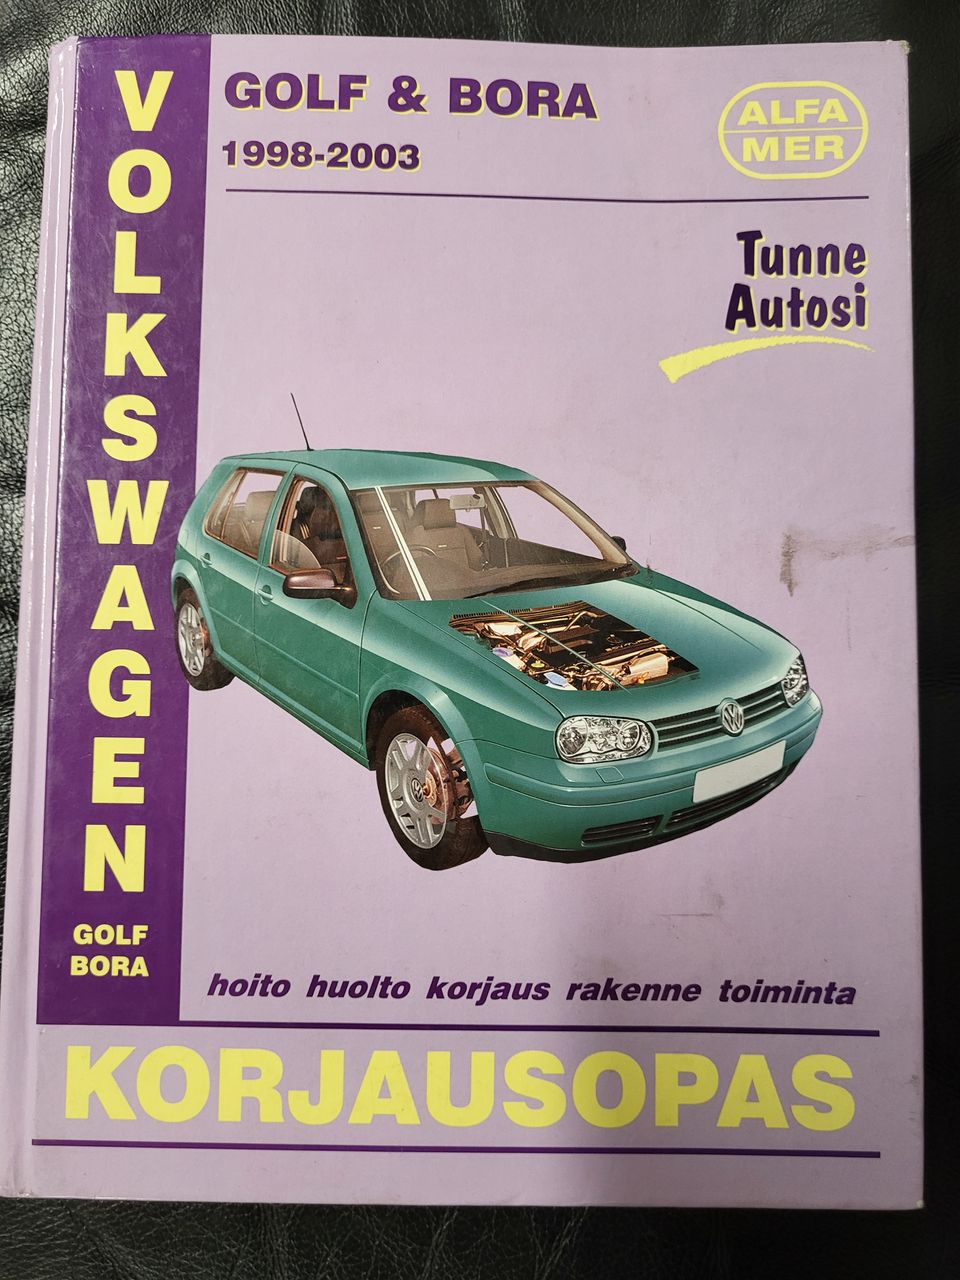 VW Golf Bora Alfamer korjausopas